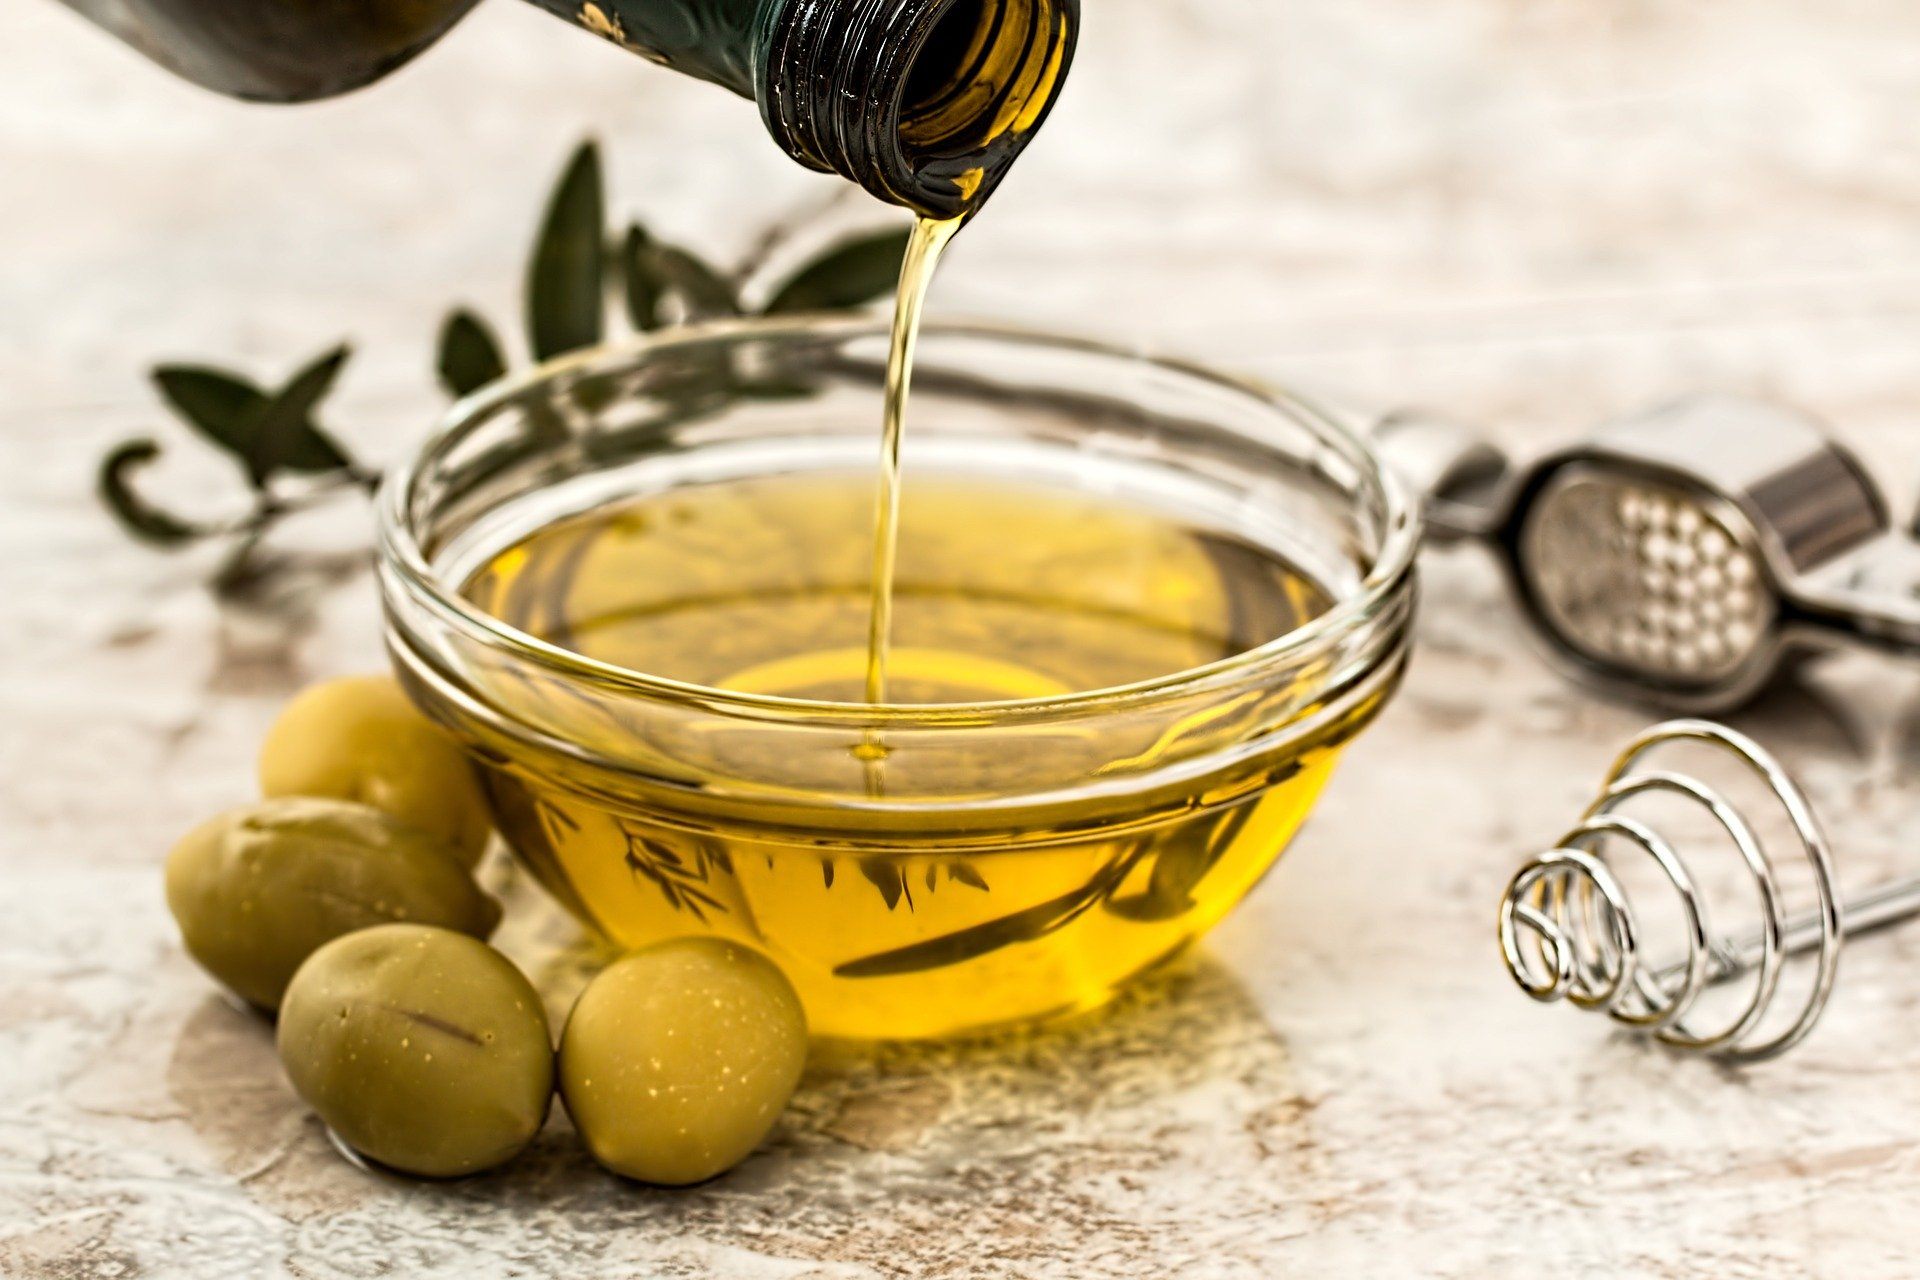 Welches ist das beste Olivenöl bei Aldi?